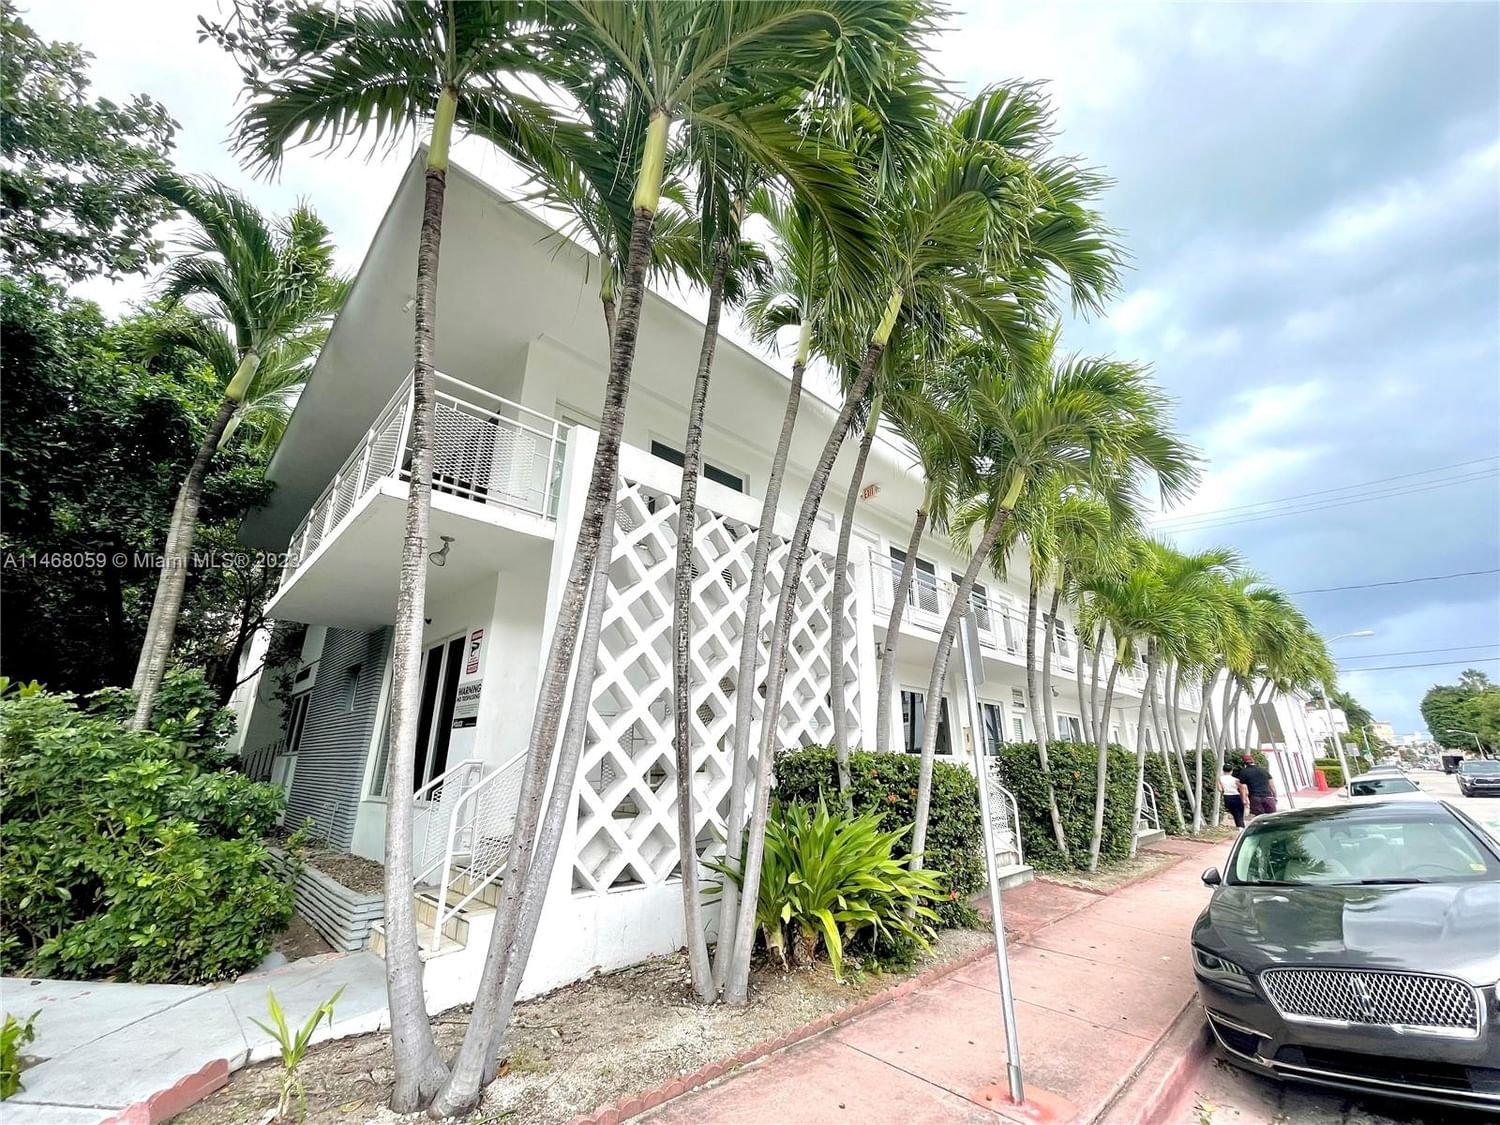 Real estate property located at 745 13th St #11, Miami-Dade County, BEACHWALK CONDO, Miami Beach, FL